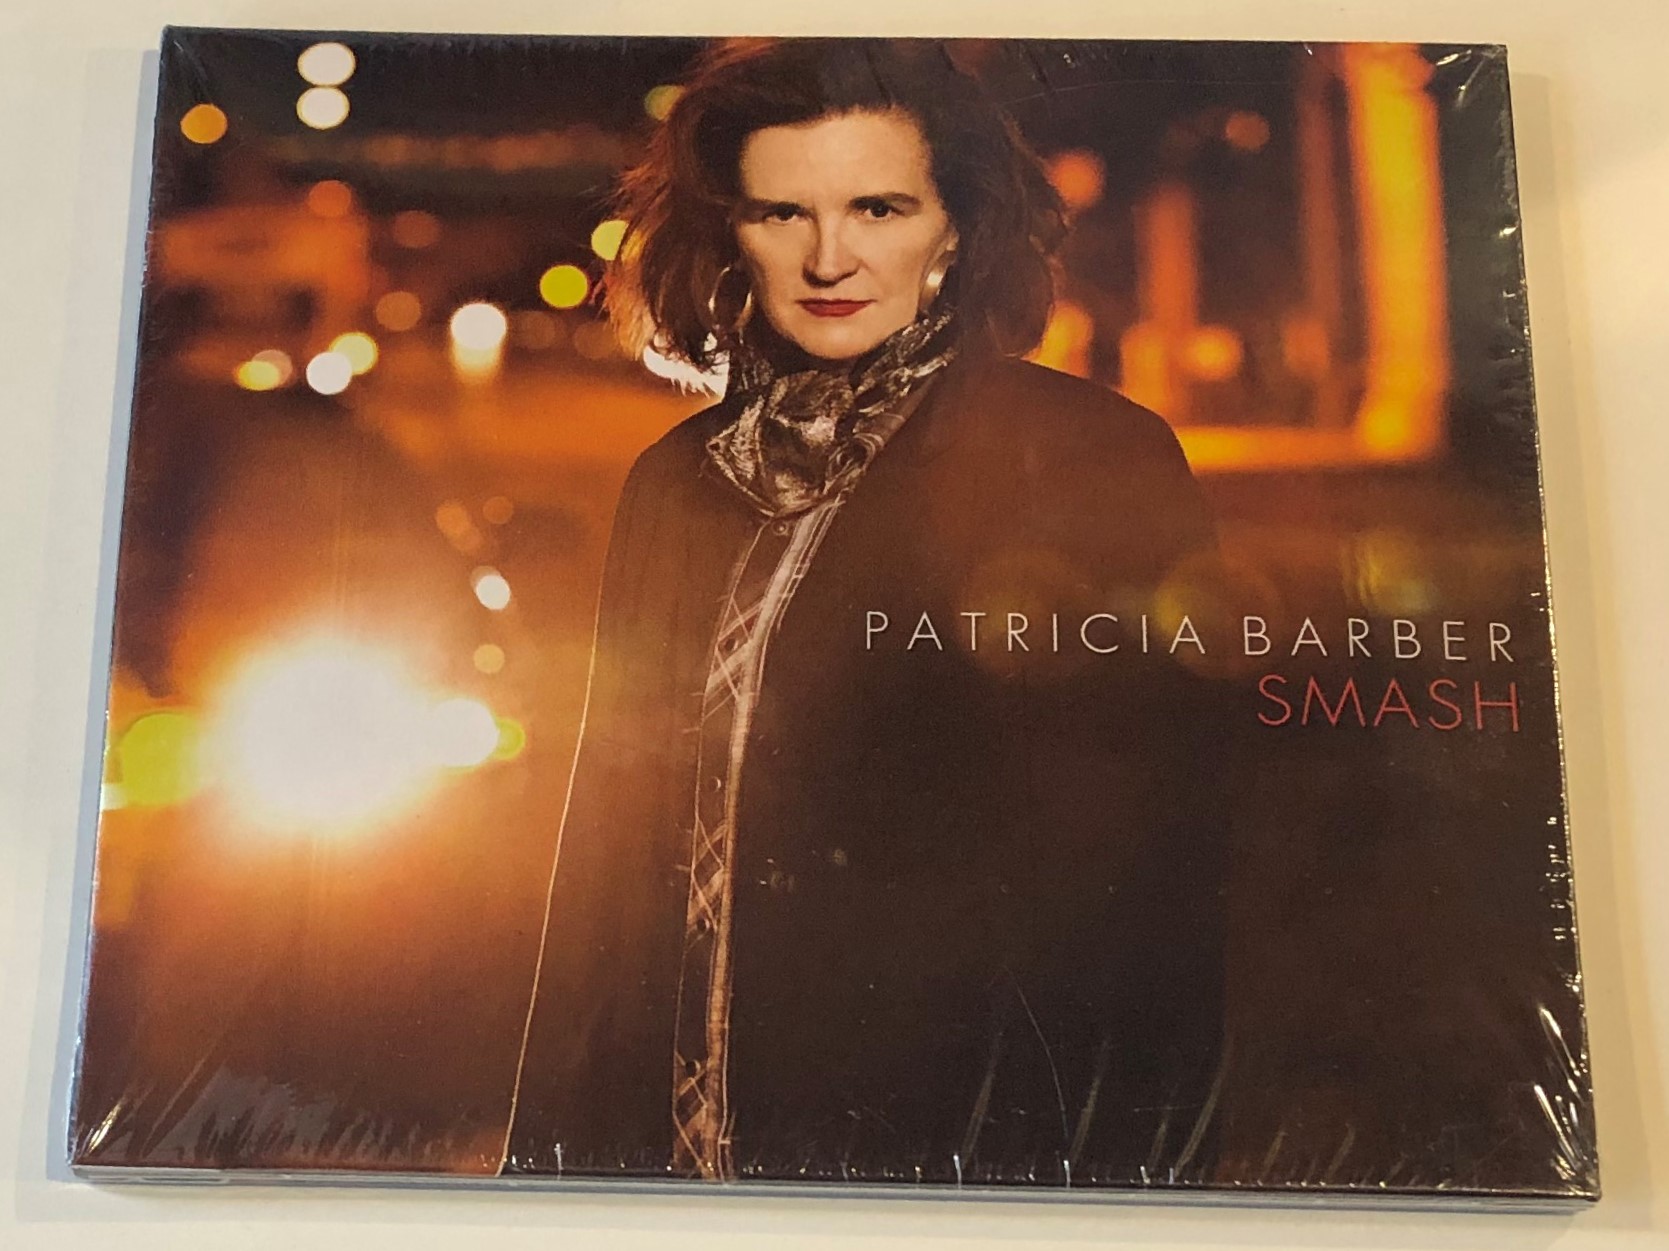 patricia-barber-smash-concord-jazz-audio-cd-2013-0888072336766-1-.jpg